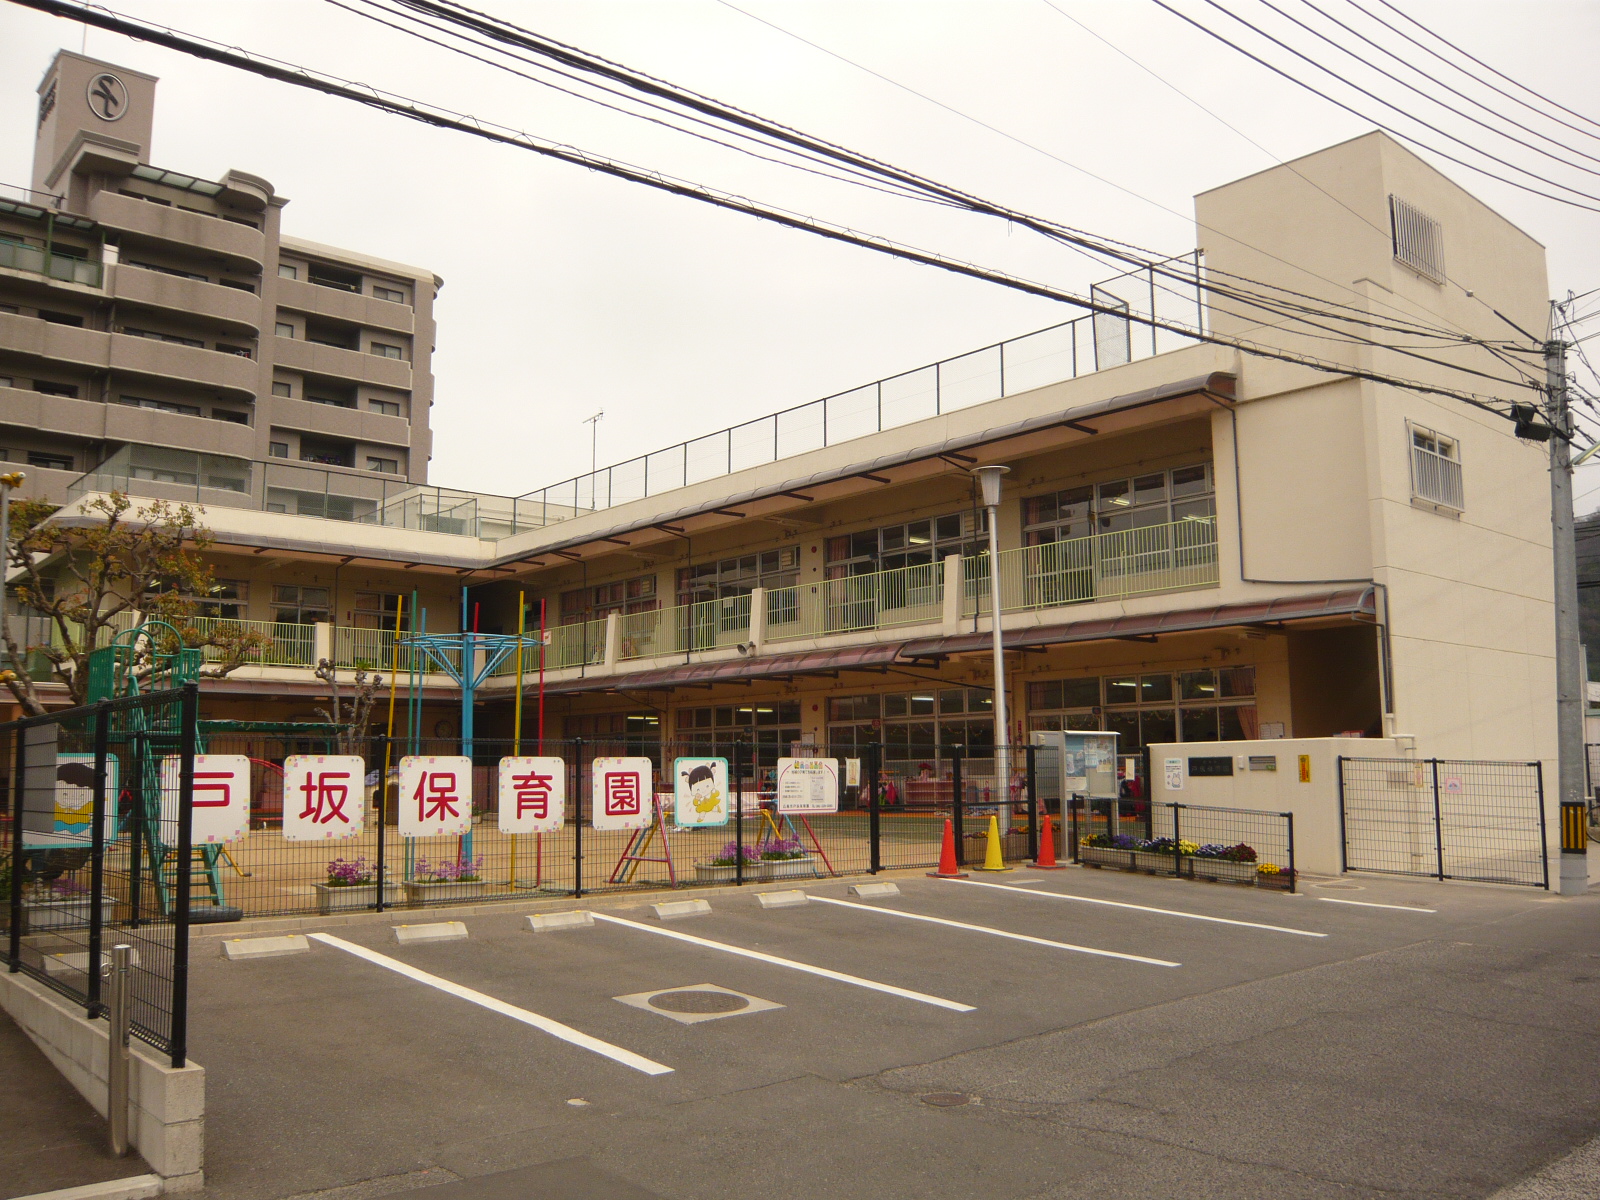 kindergarten ・ Nursery. Tosaka nursery school (kindergarten ・ Nursery school) to 200m